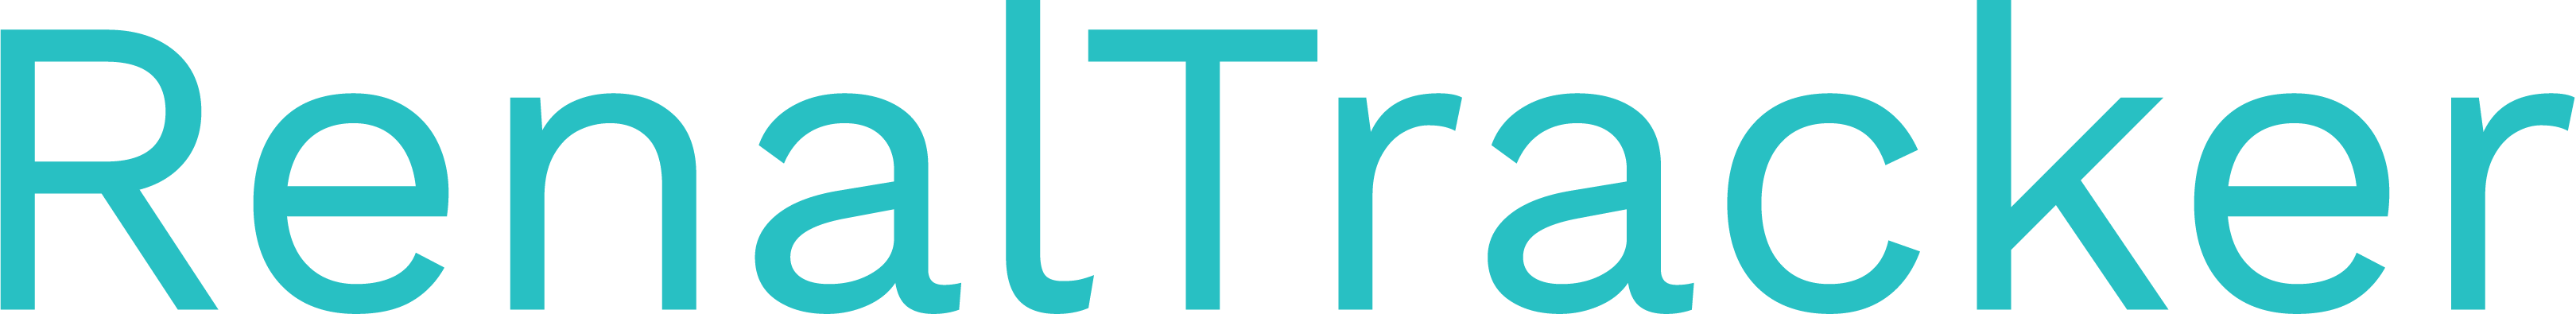 RenalTracker - Blue_logo